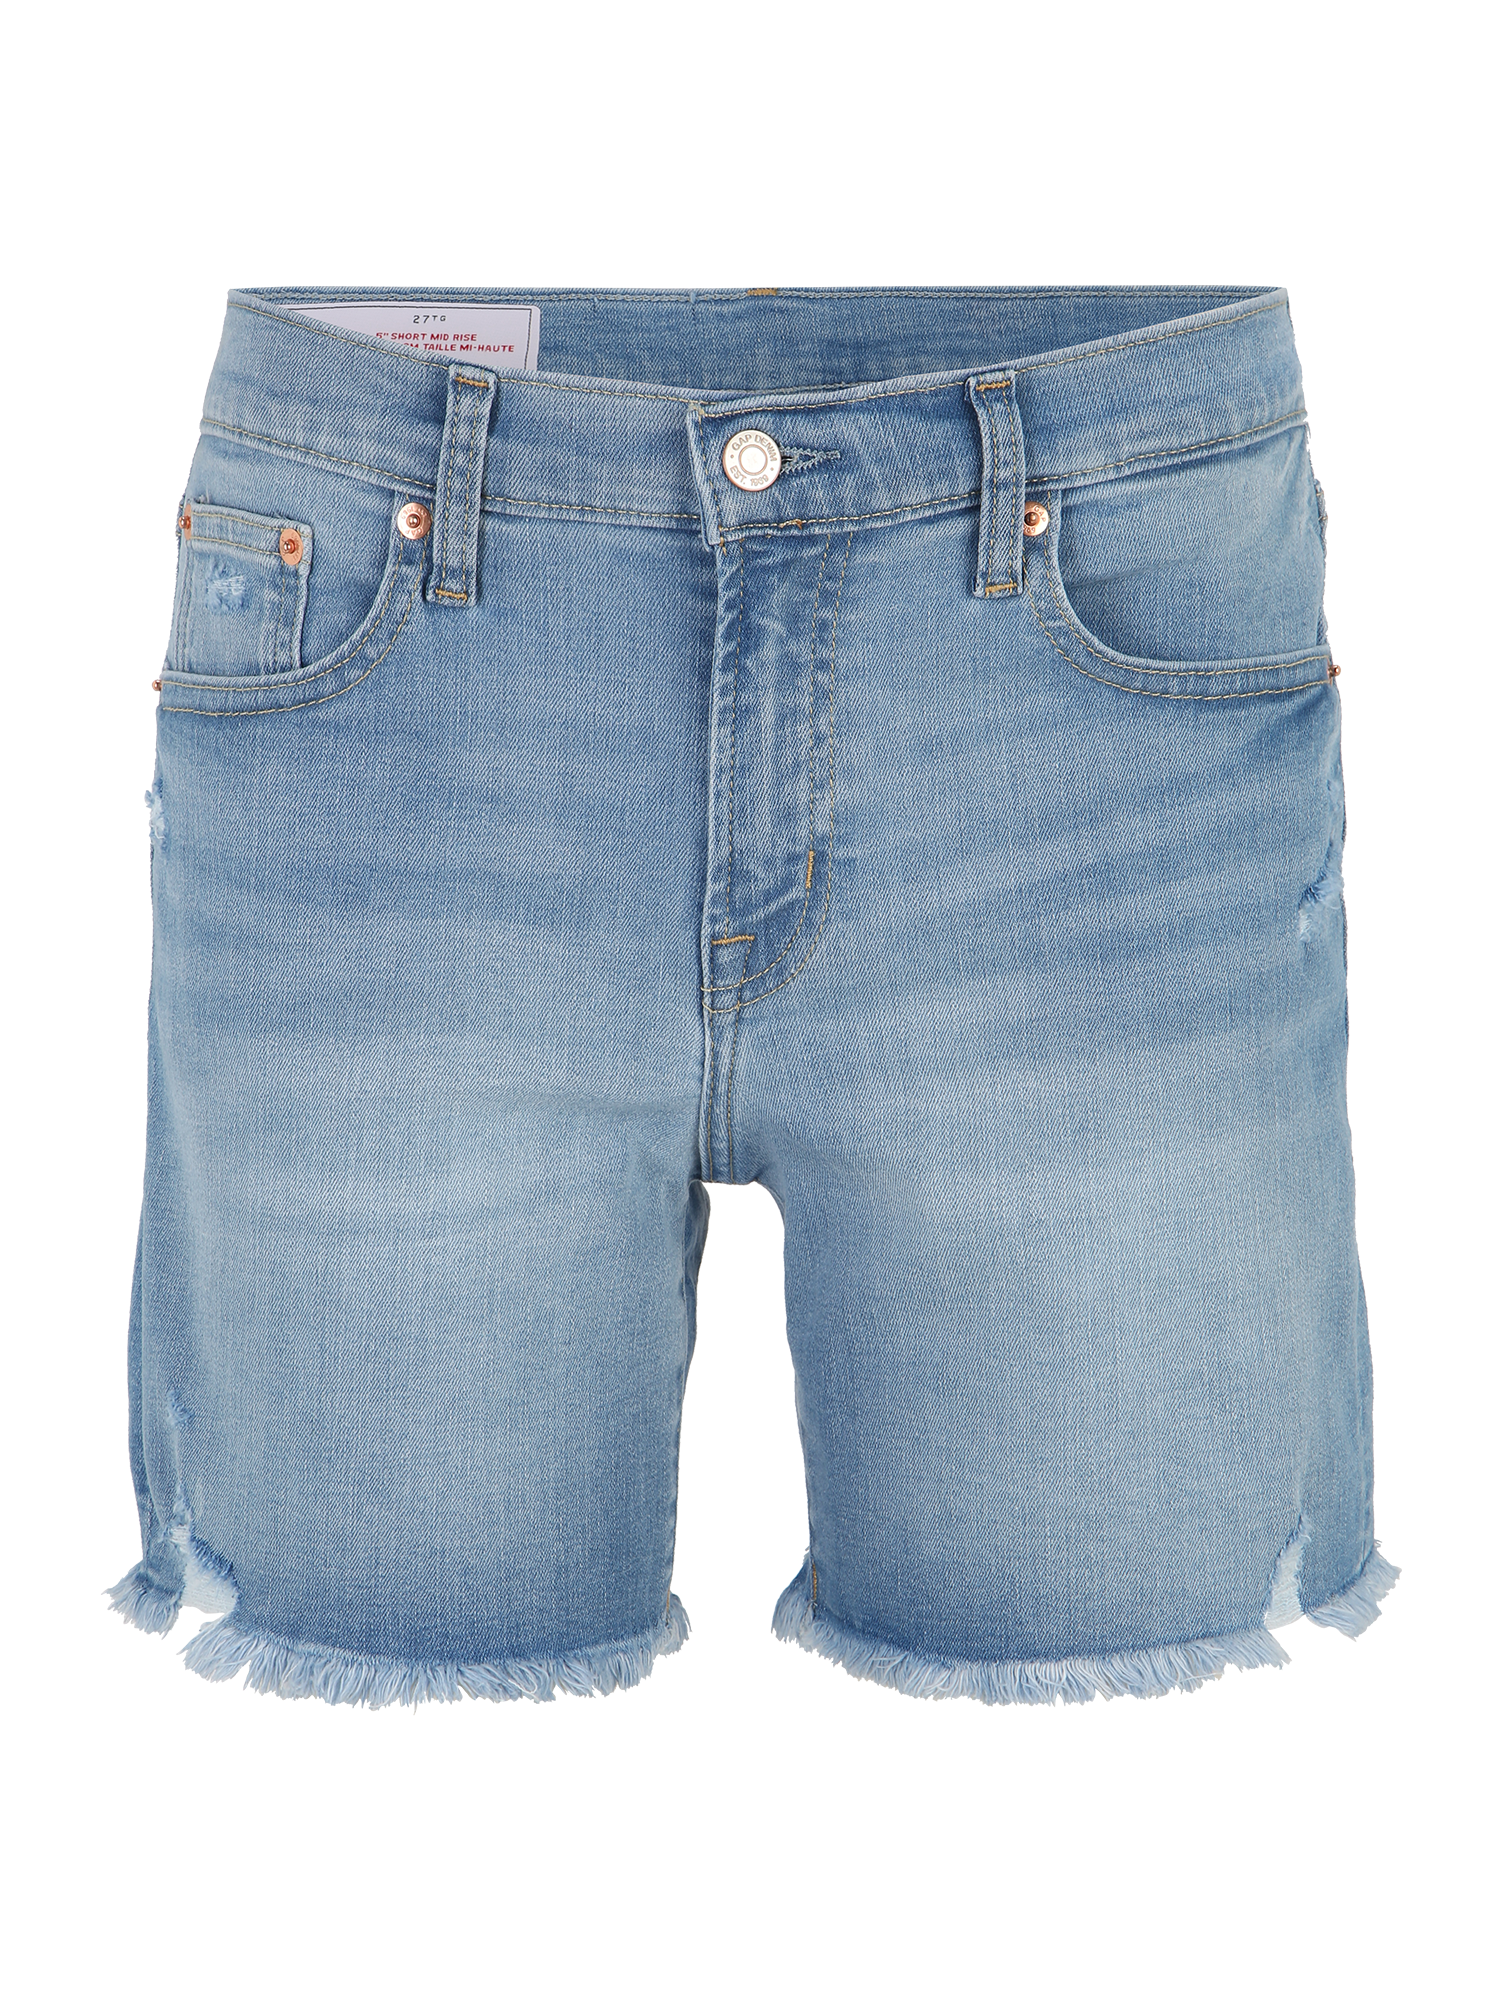 CuUpm Jeans Gap Tall Jeans in Blu 